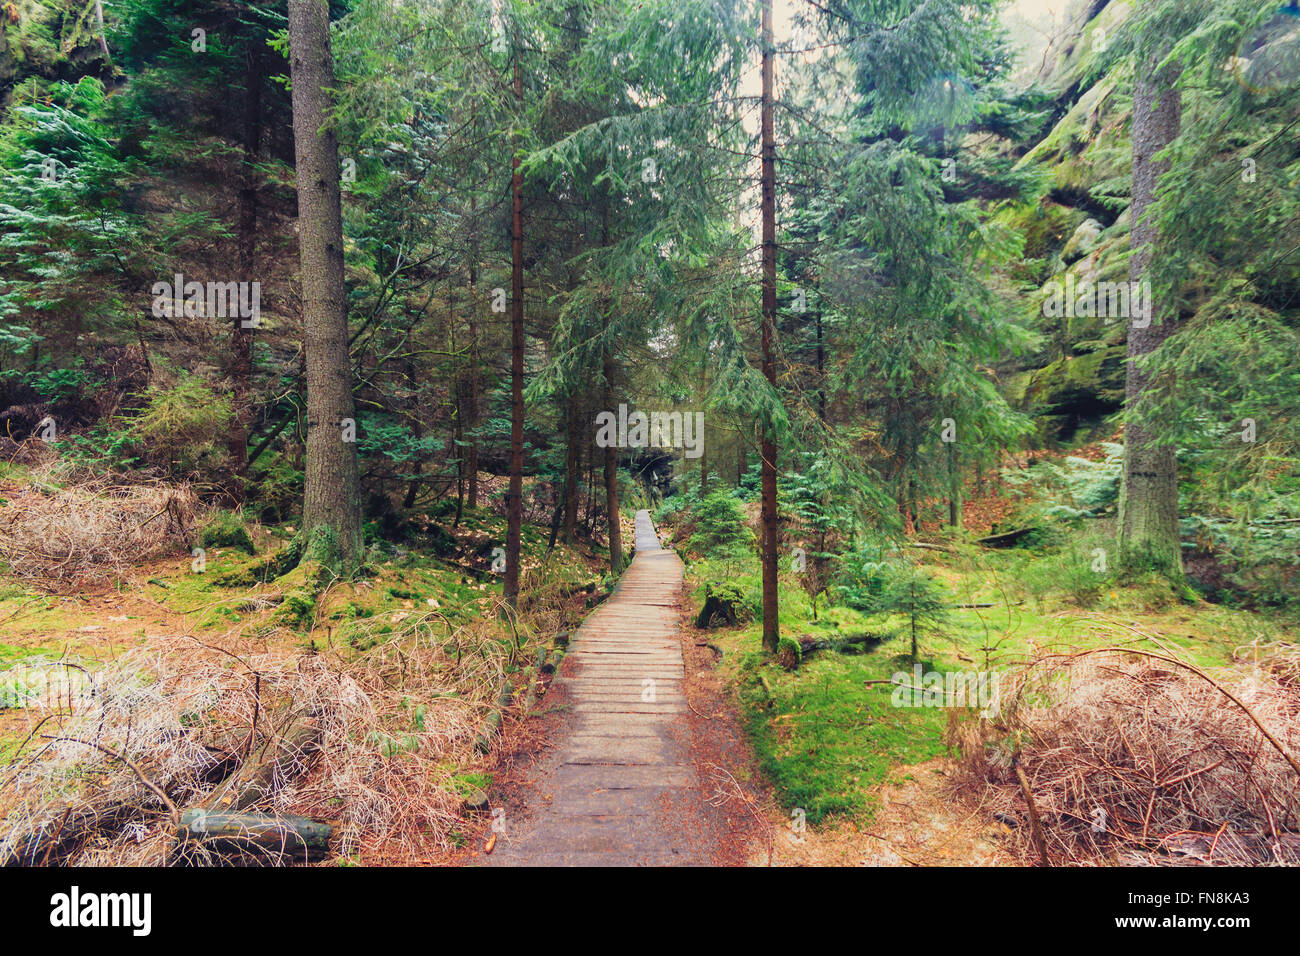 Ruta de senderismo de madera a través de paisajes forestales Foto de stock